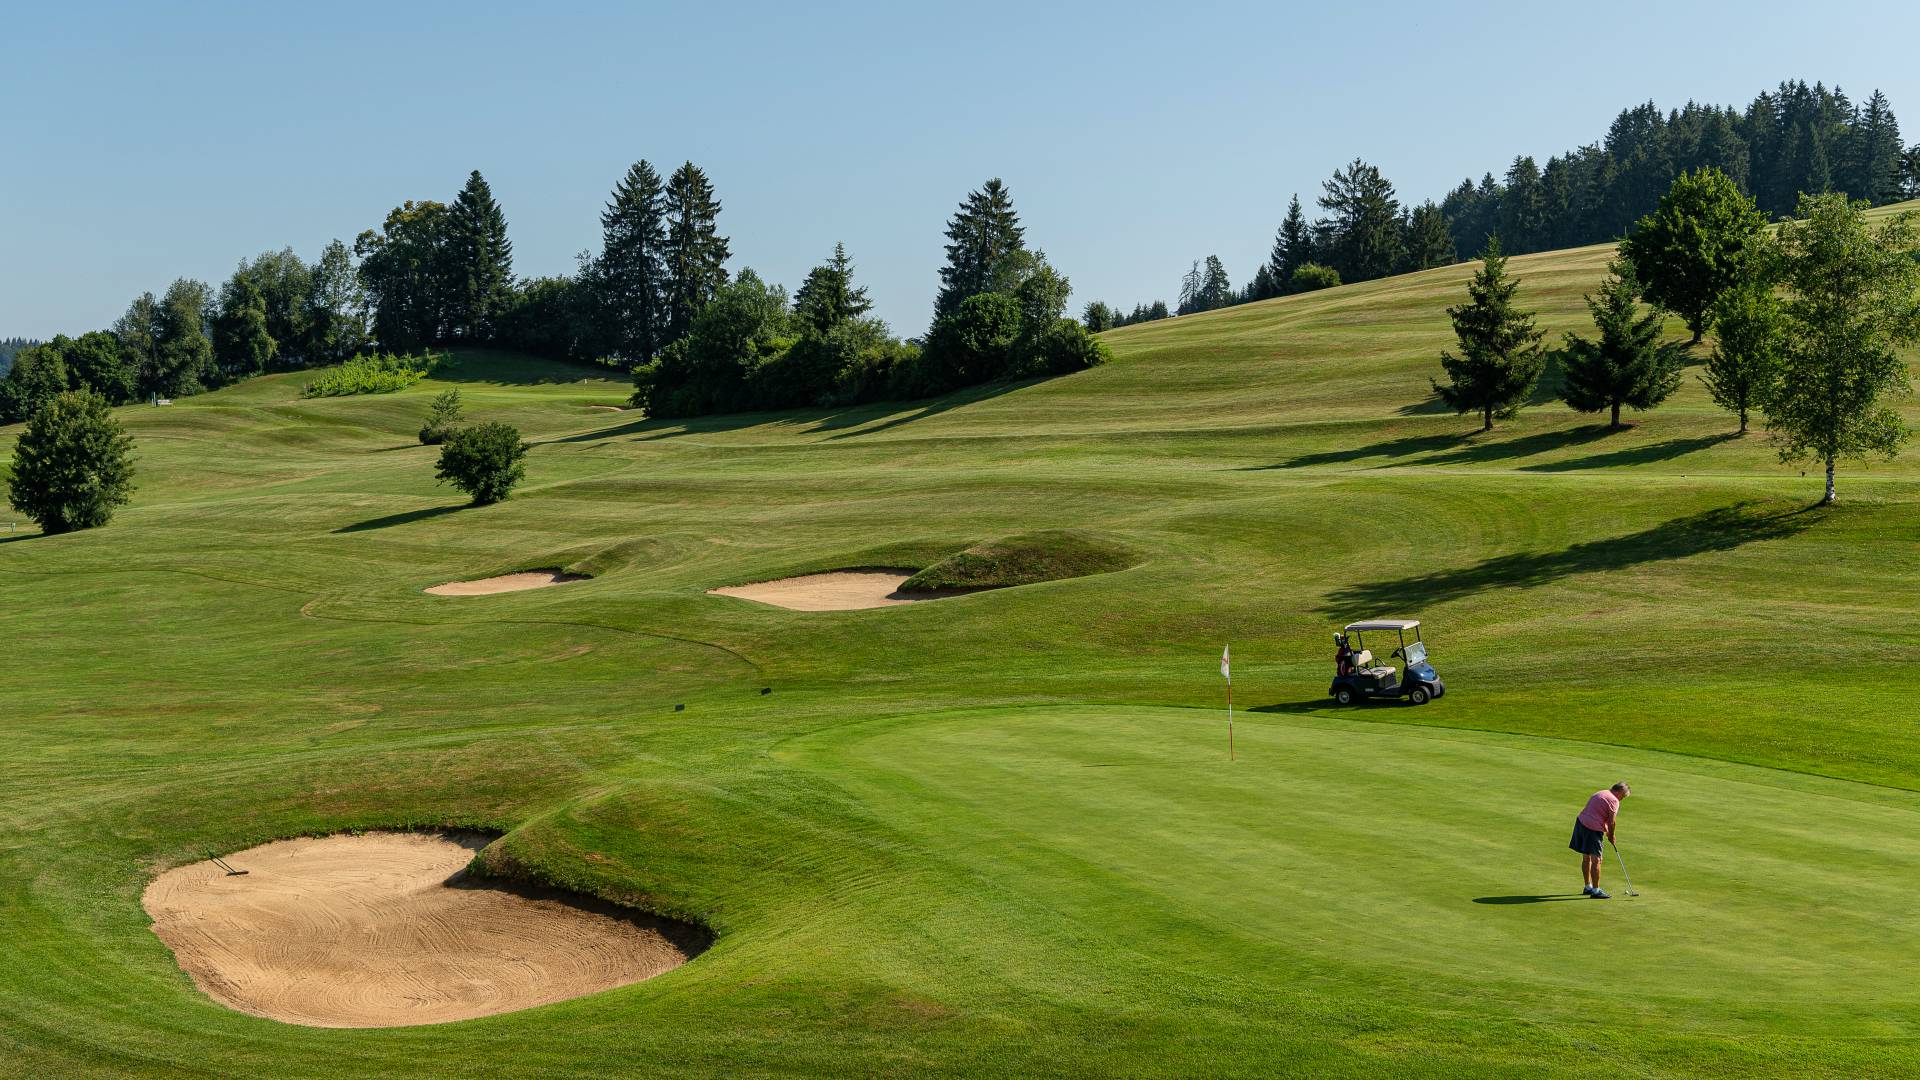 Golf course in Oberstaufen